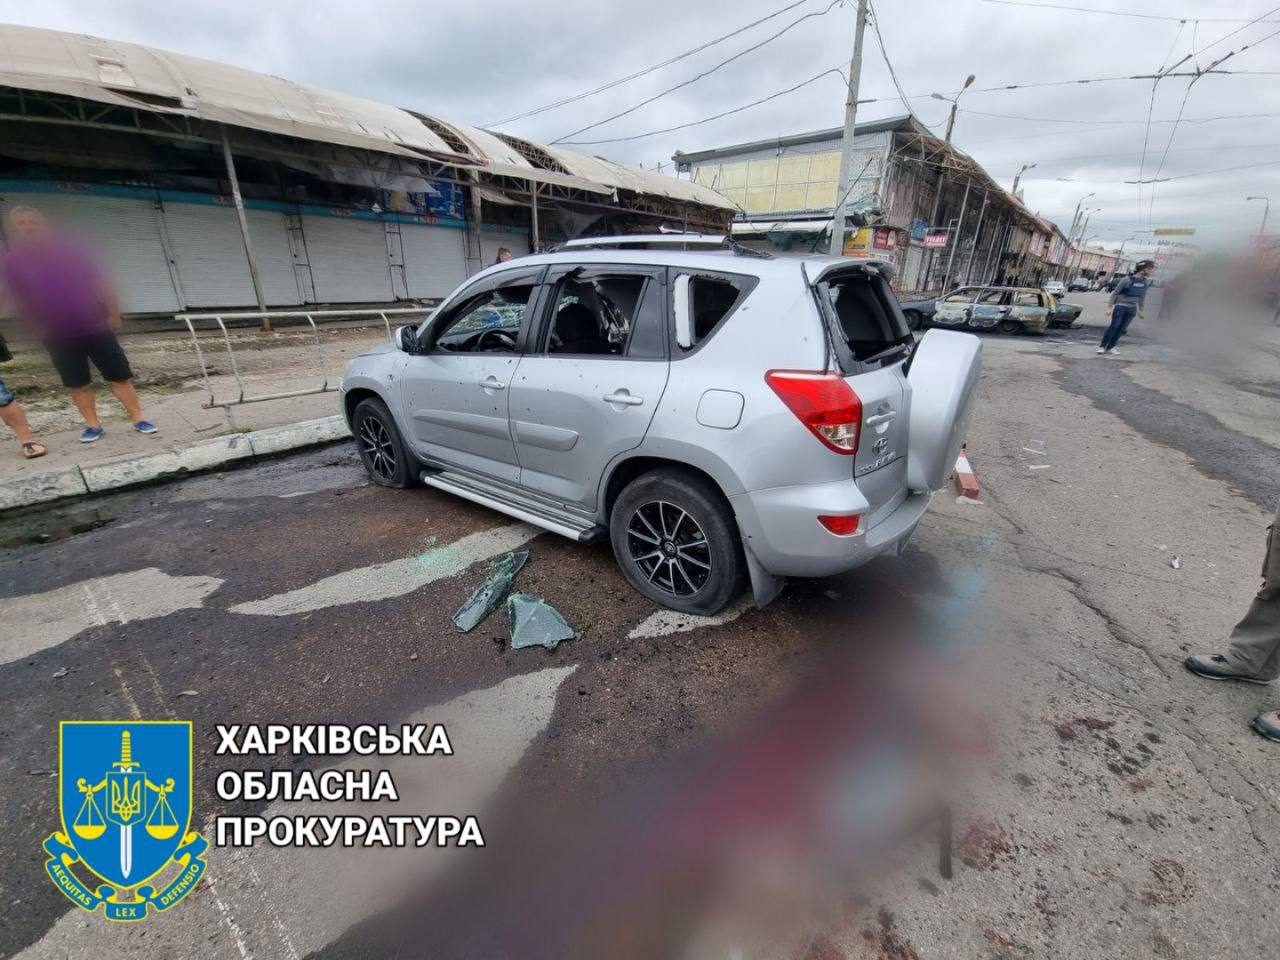 Войска РФ специально целились в крупный рынок - полиция о сегодняшнем обстреле Харькова